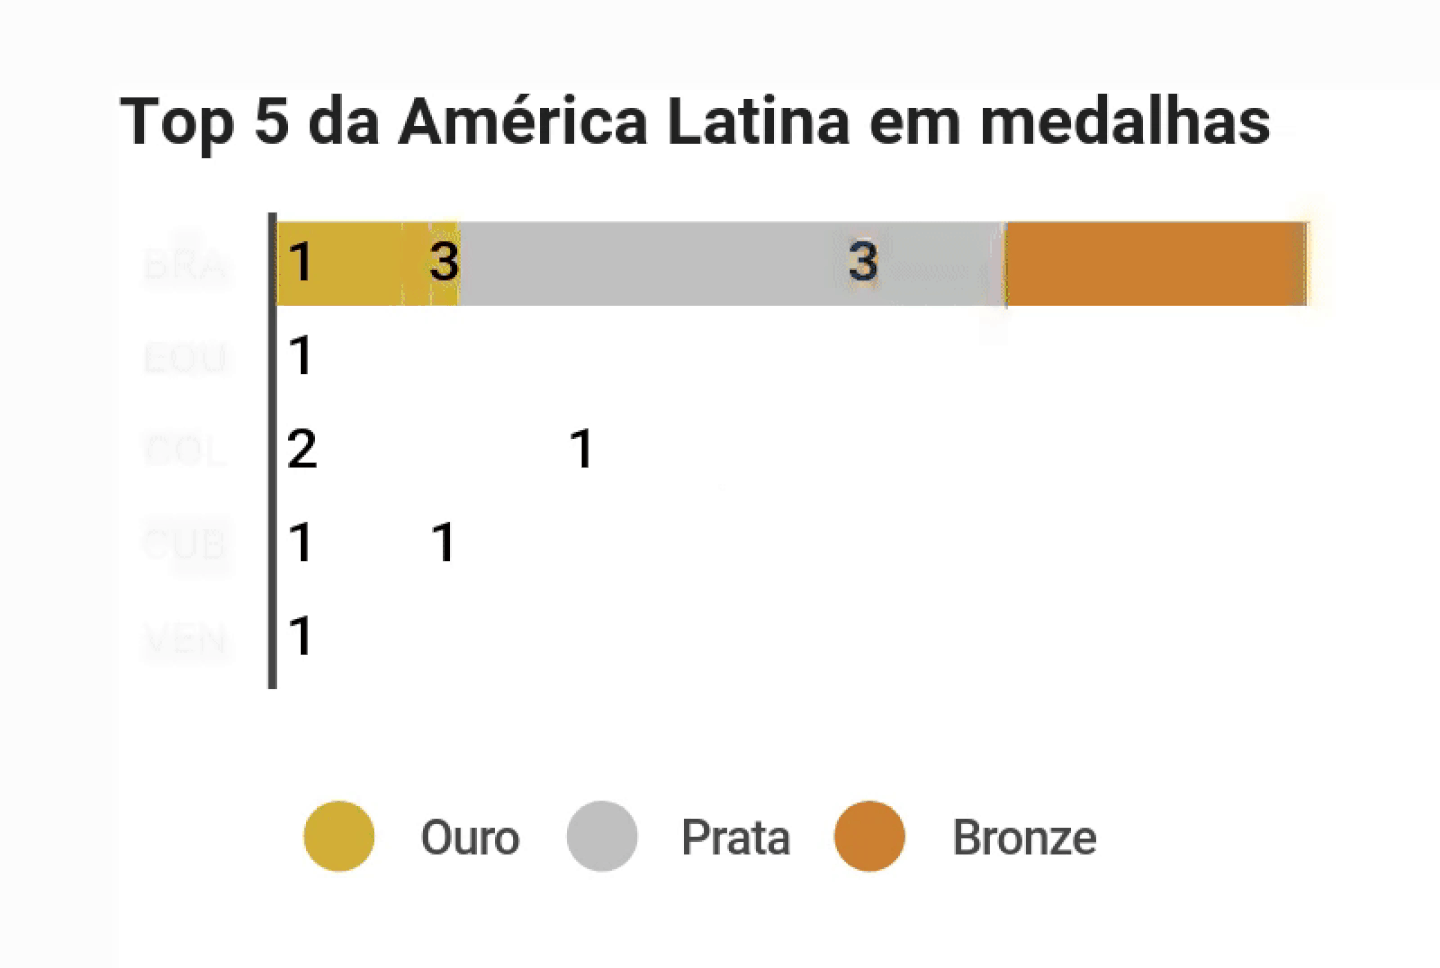 Top 5 da América Latina em medalhasdfd